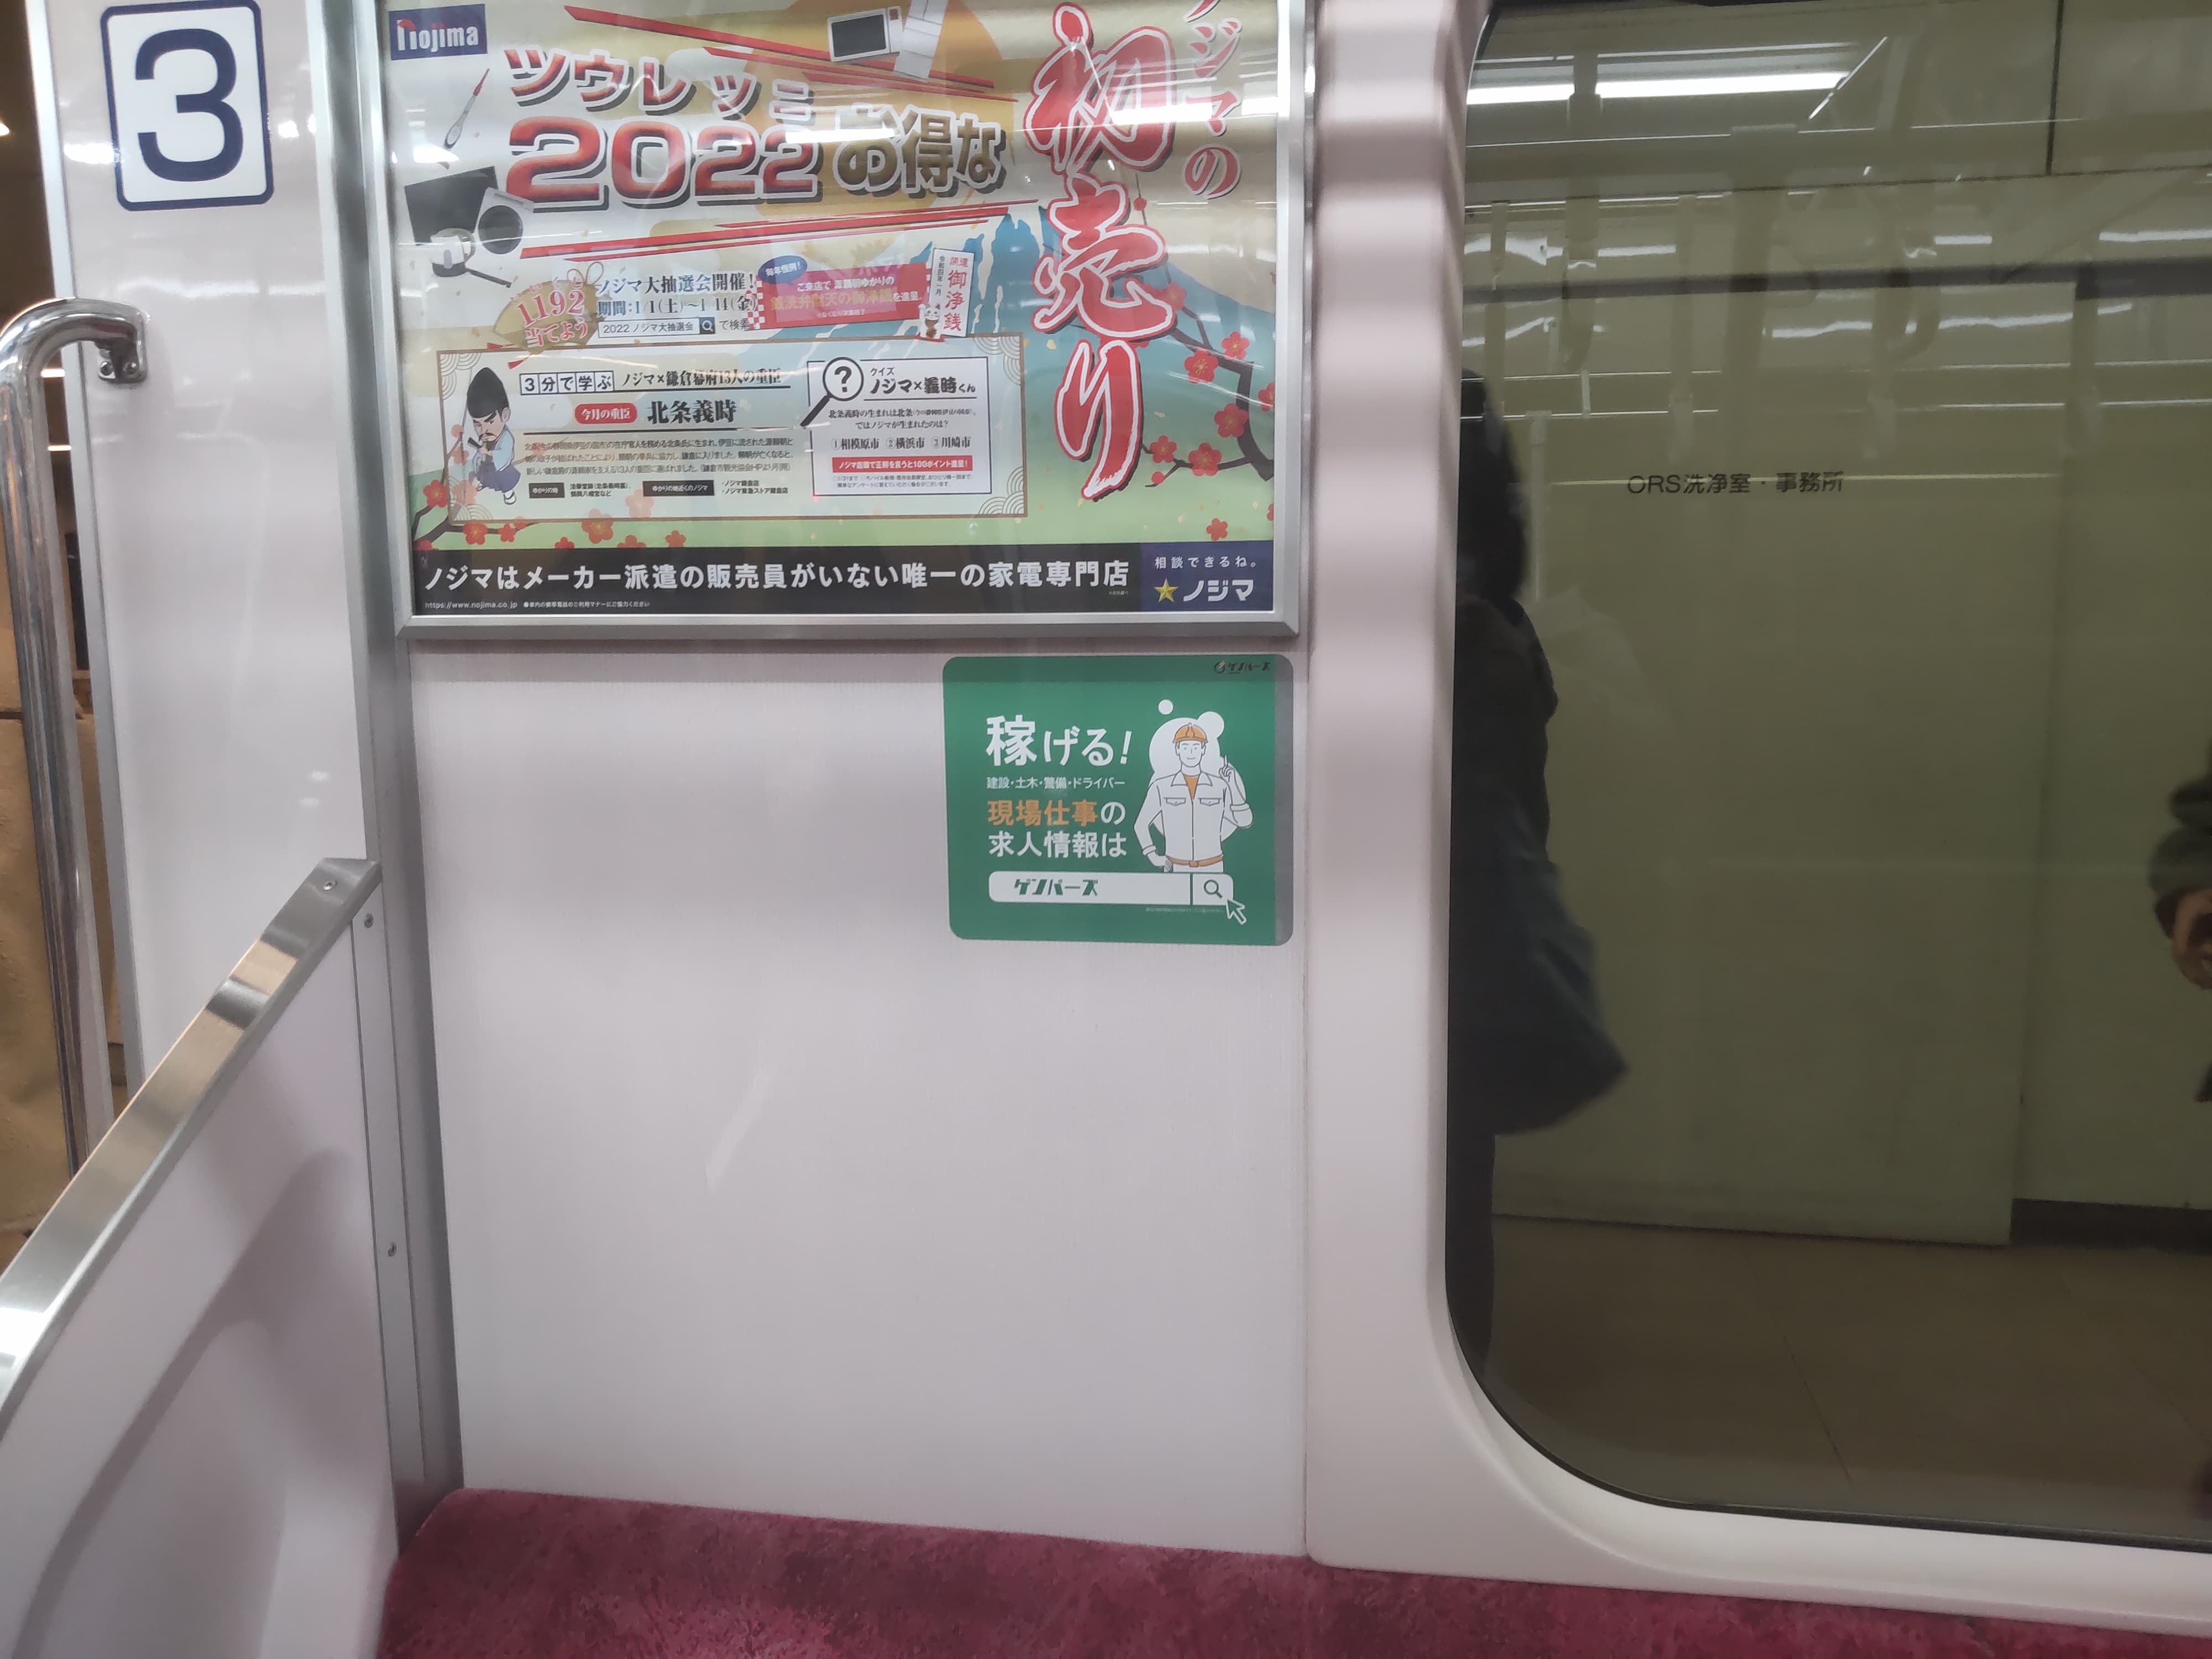 Quảng cáo tàu Odakyu Line